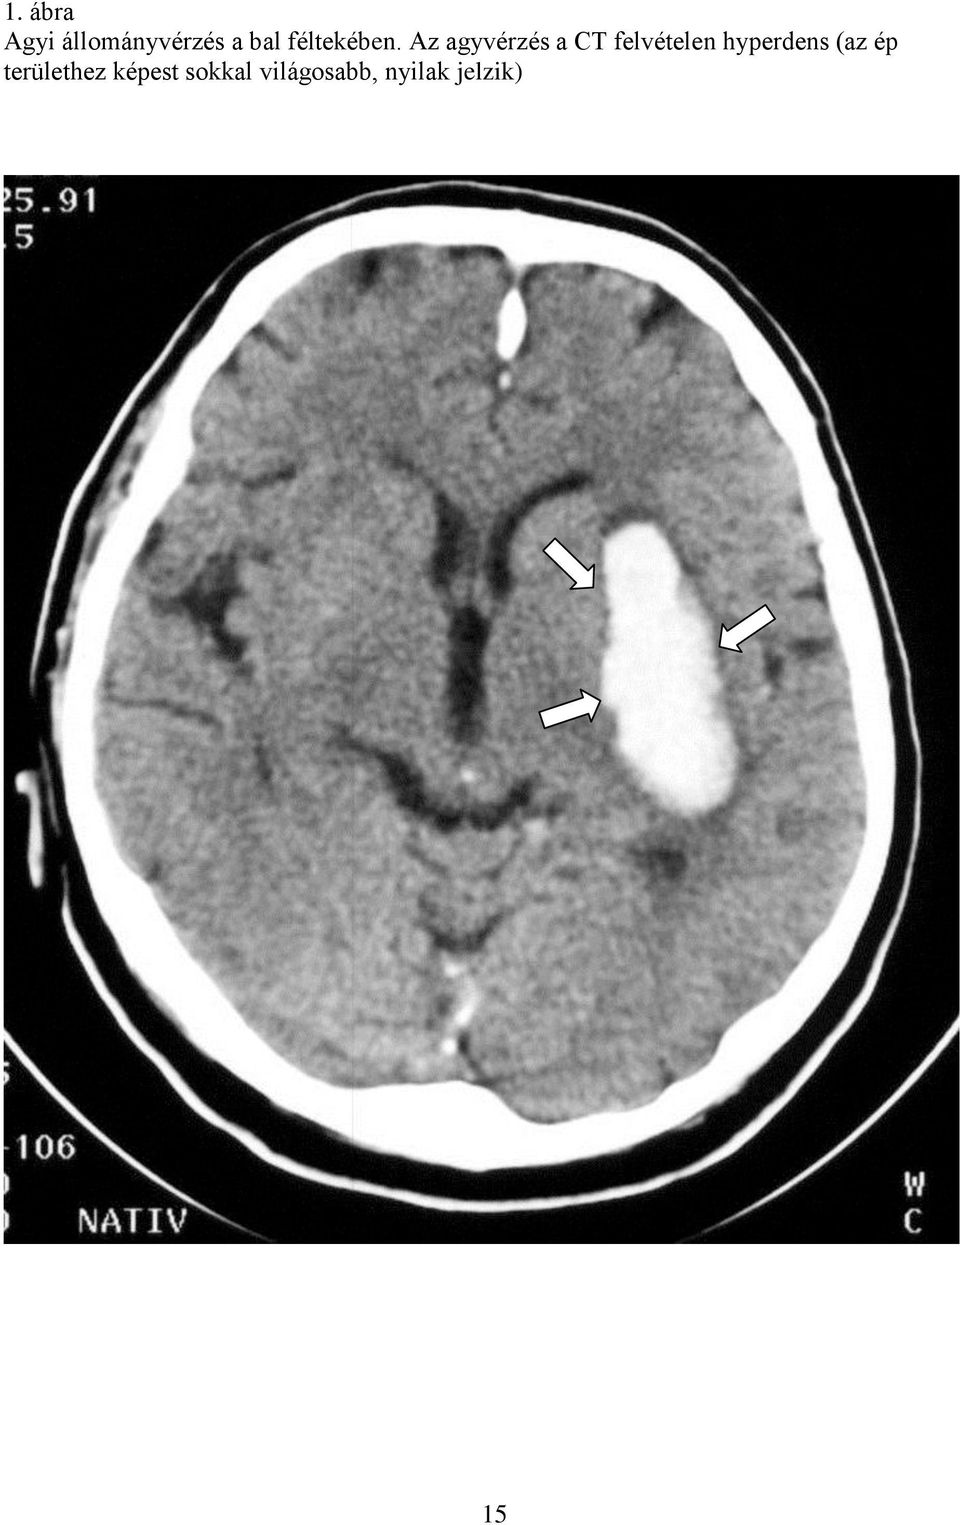 Az agyvérzés a CT felvételen